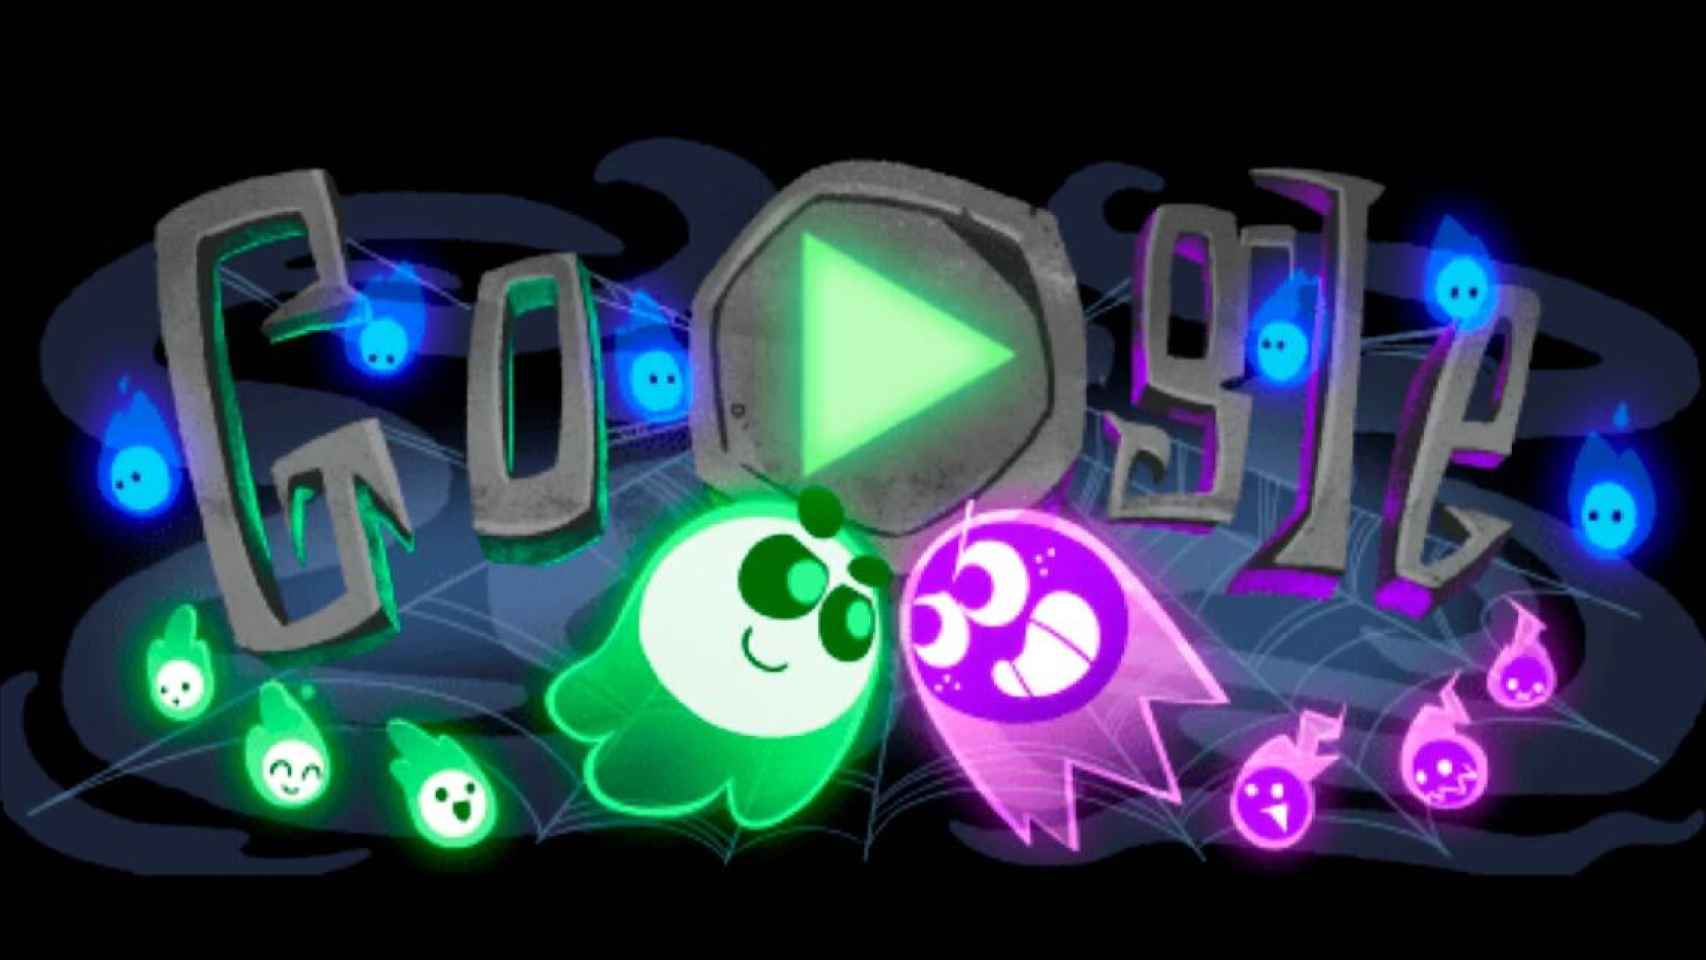 AQUÍ] Juegos de Doodle de Google populares gratis: juegos de